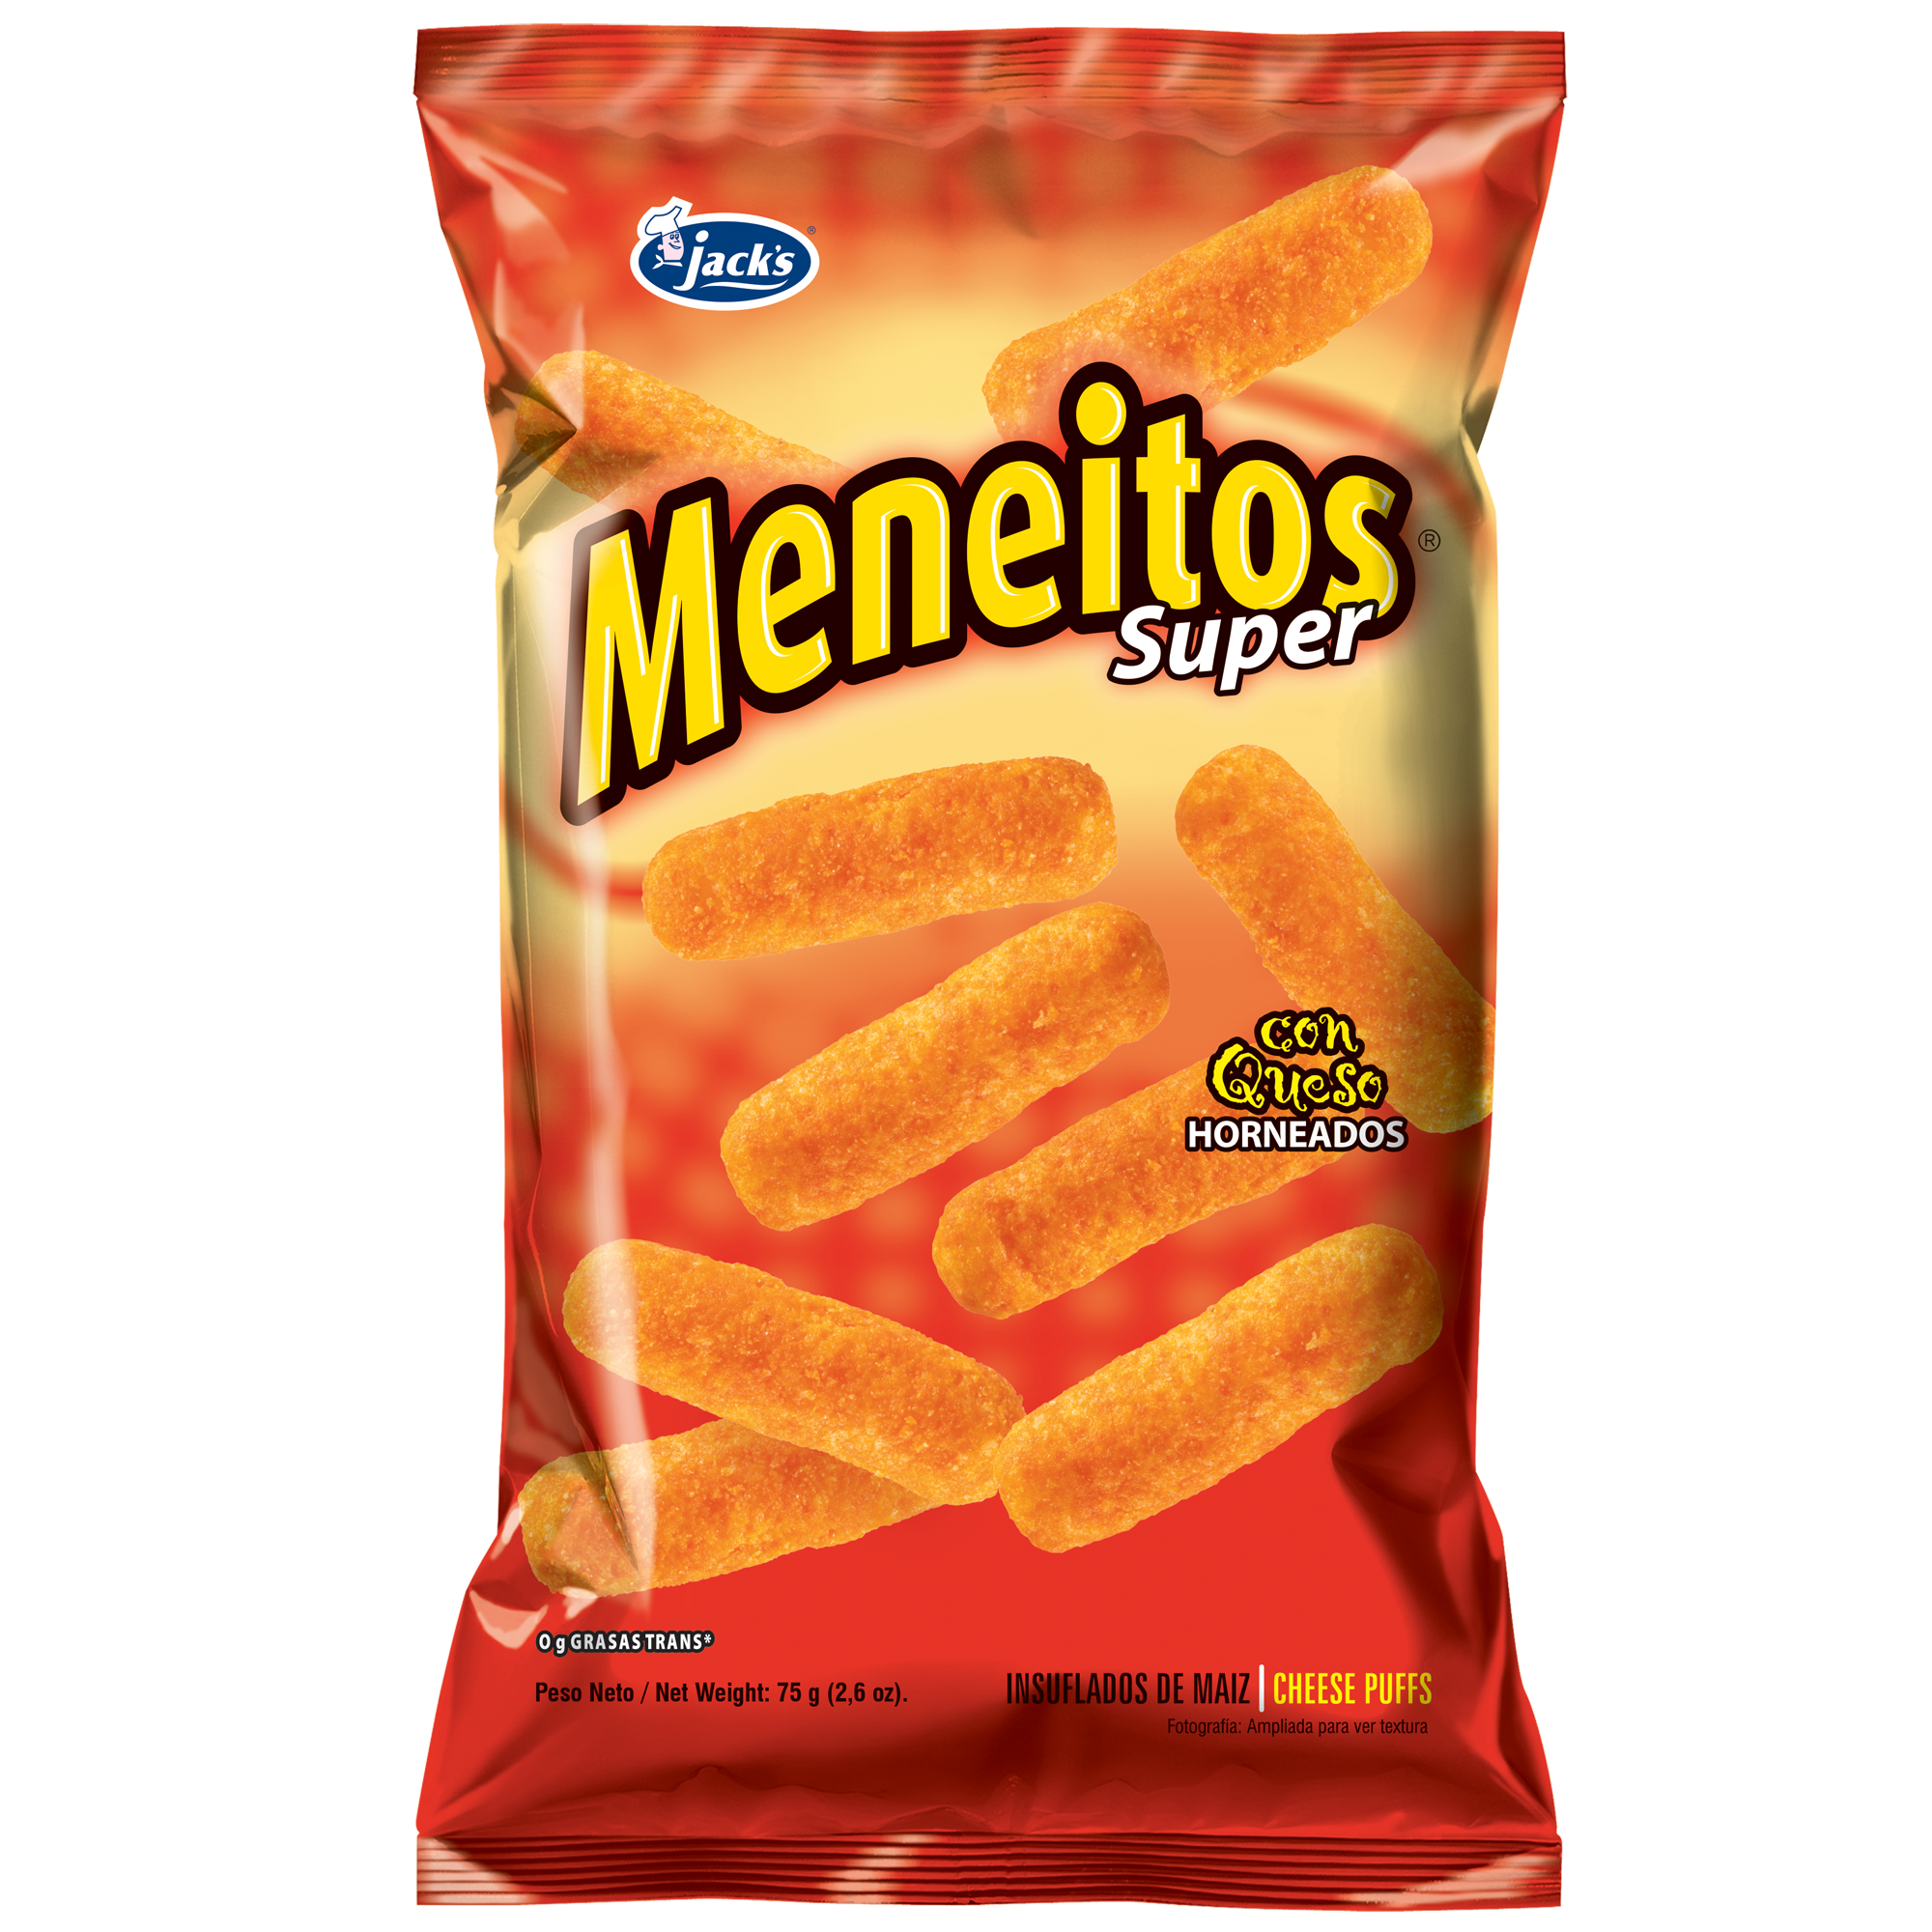 MENEITOS-SUPER-empaq-pag-web